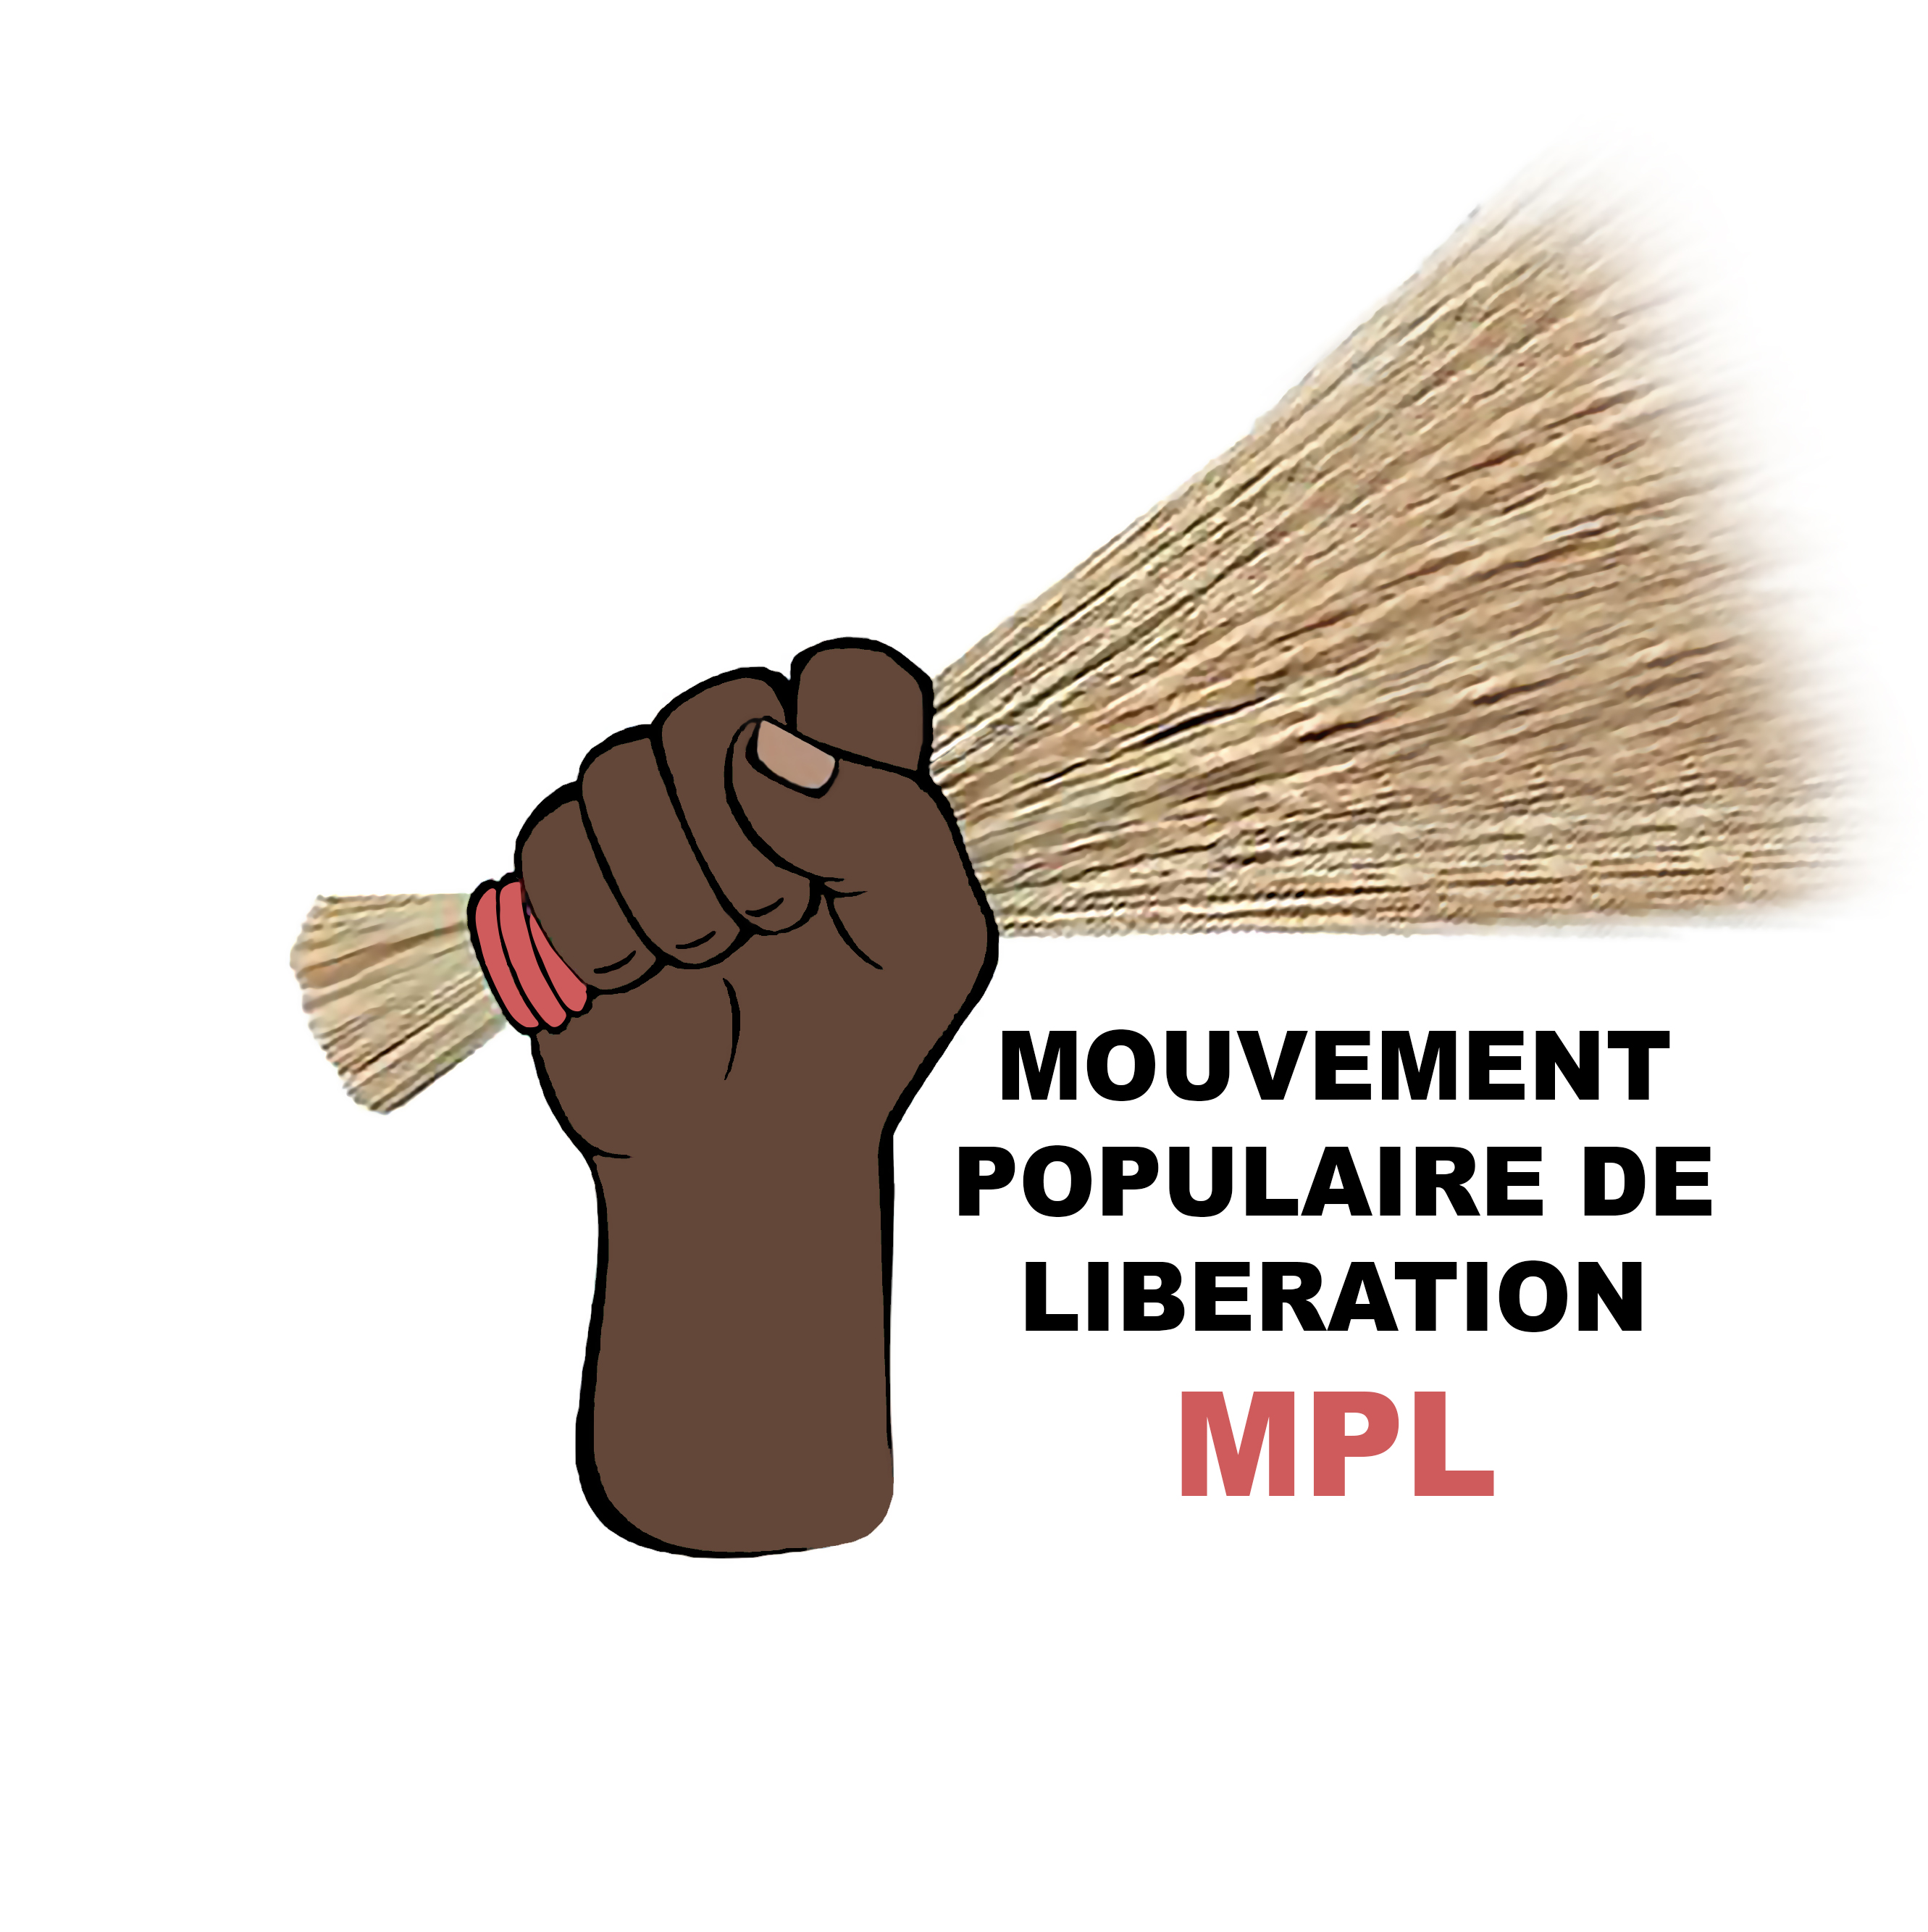 Arrestation de plusieurs personnes le 01er mai : Le MPL interpelle le Gouvernement et exige leur libération sans délai